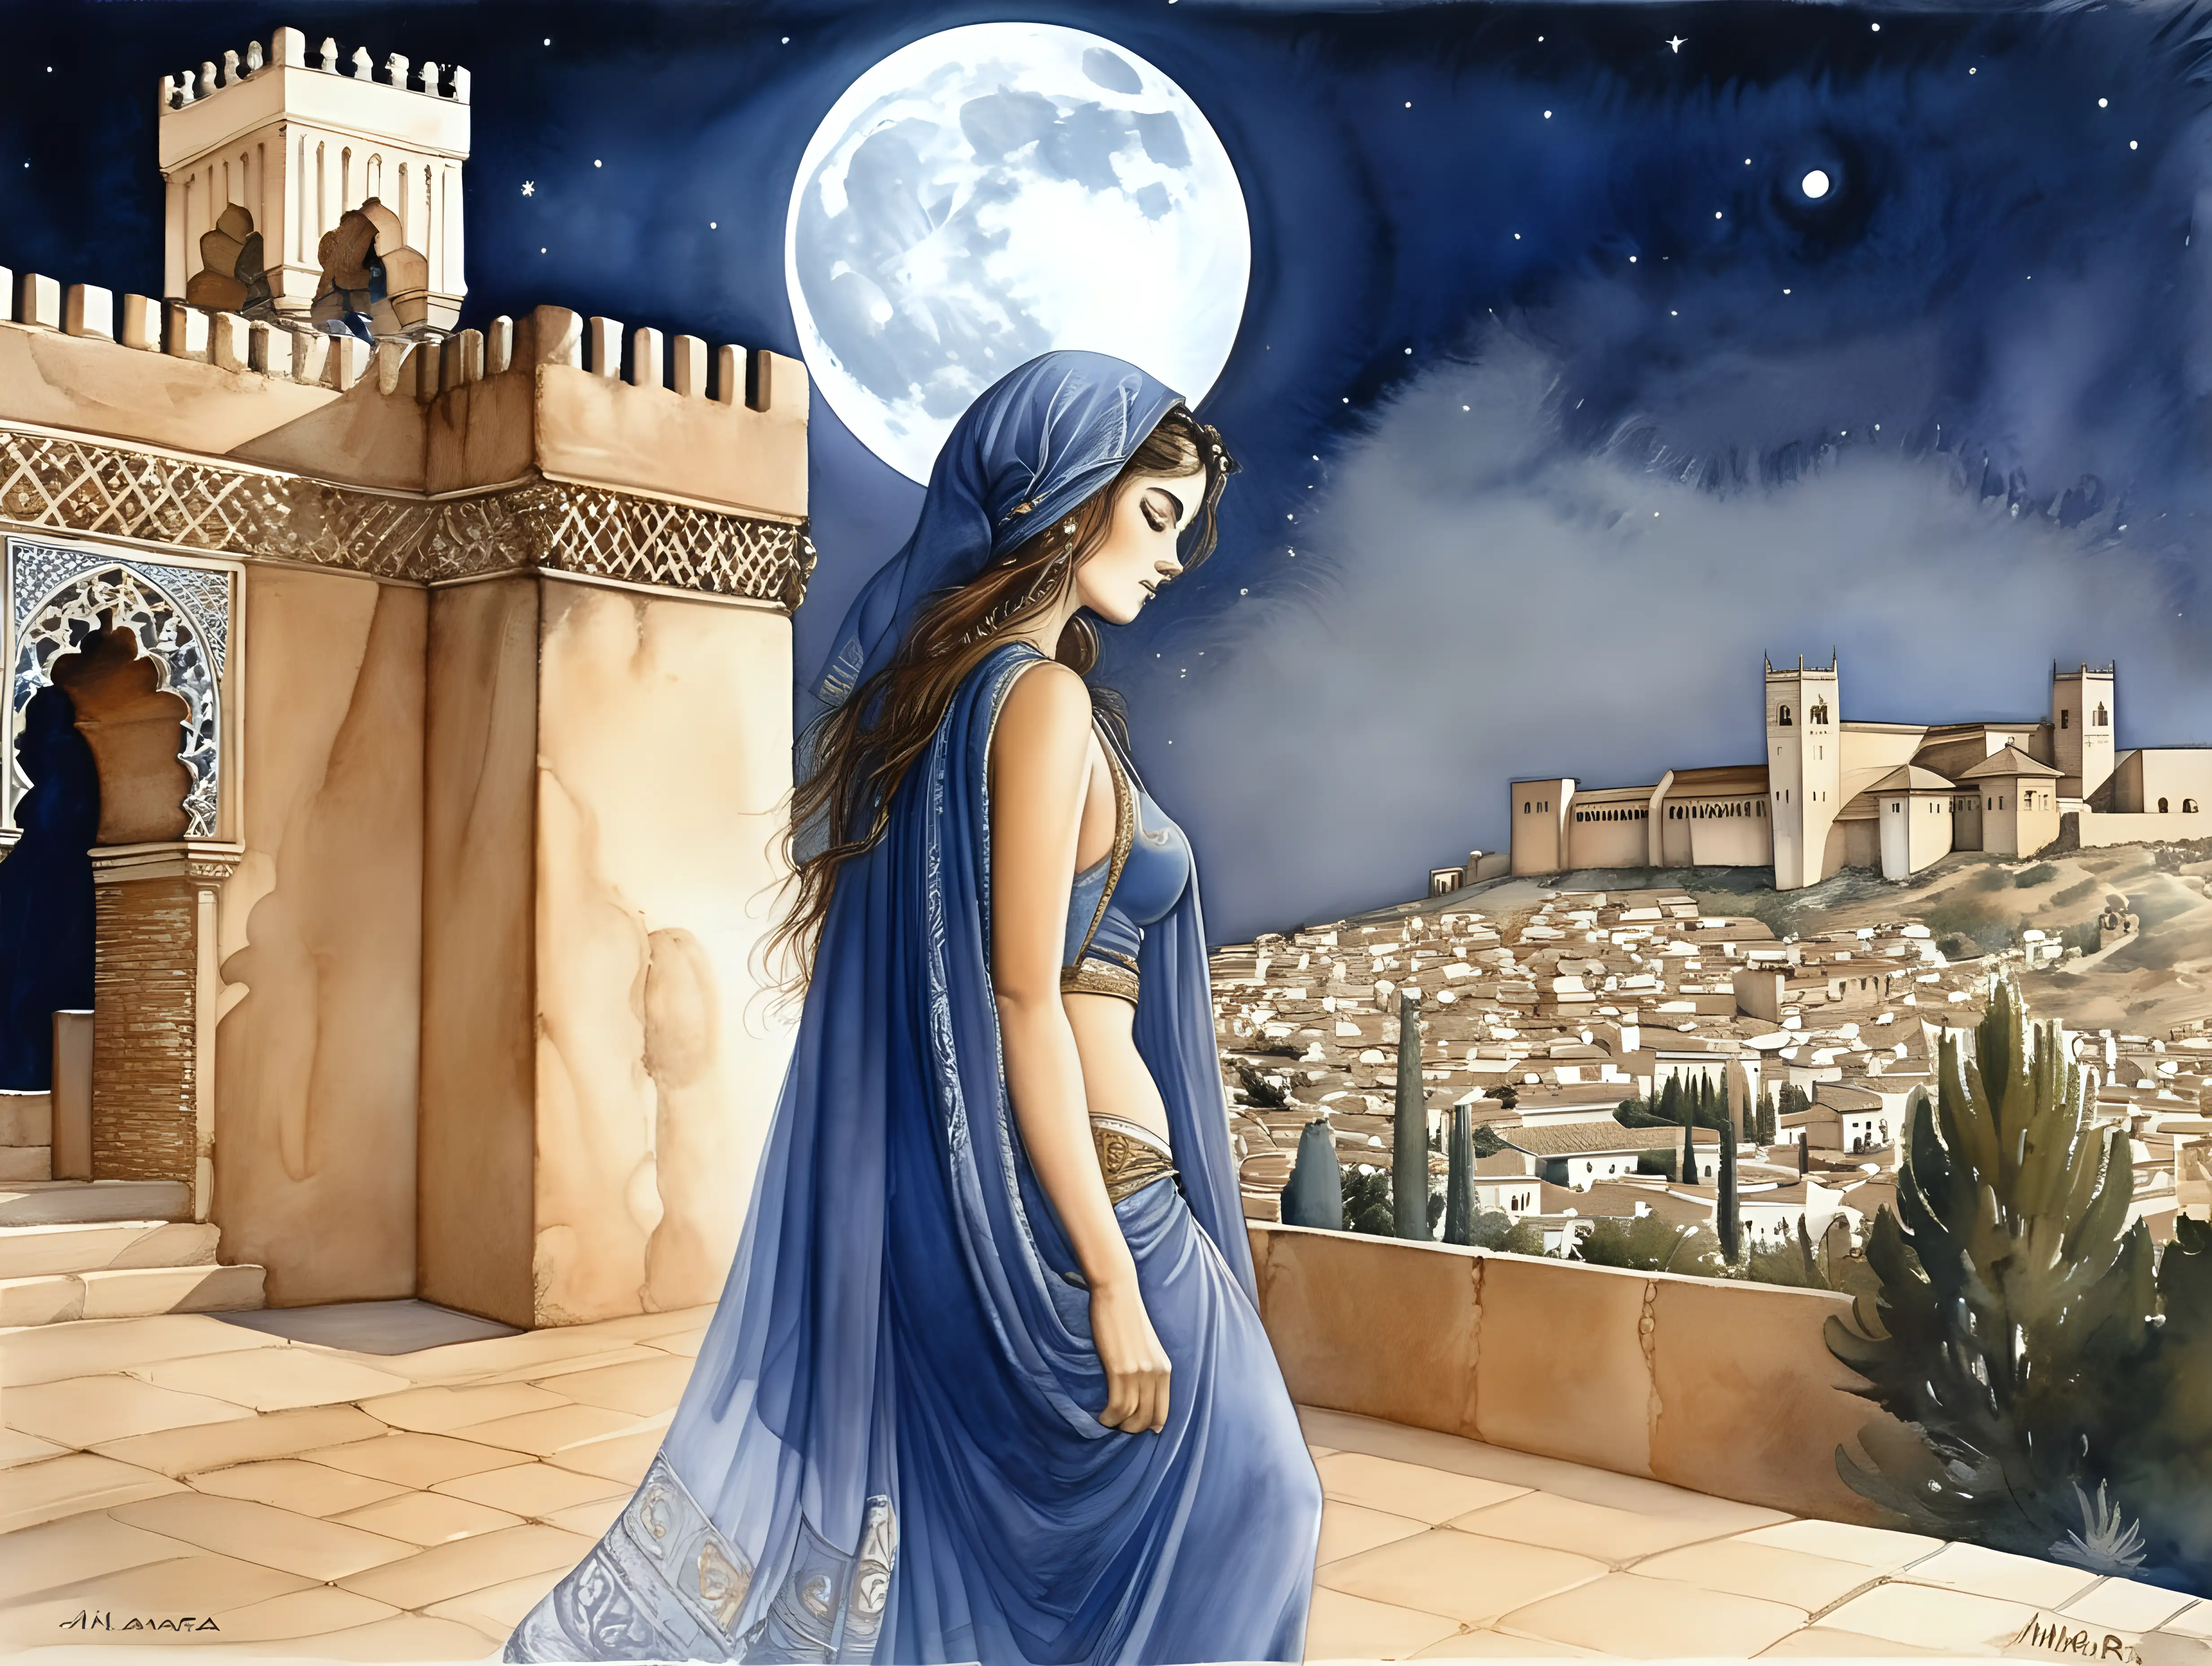 Época medieval,la Alhambra de granada, mujer arabe,noche,luna llena,Milo Manara, acuarela